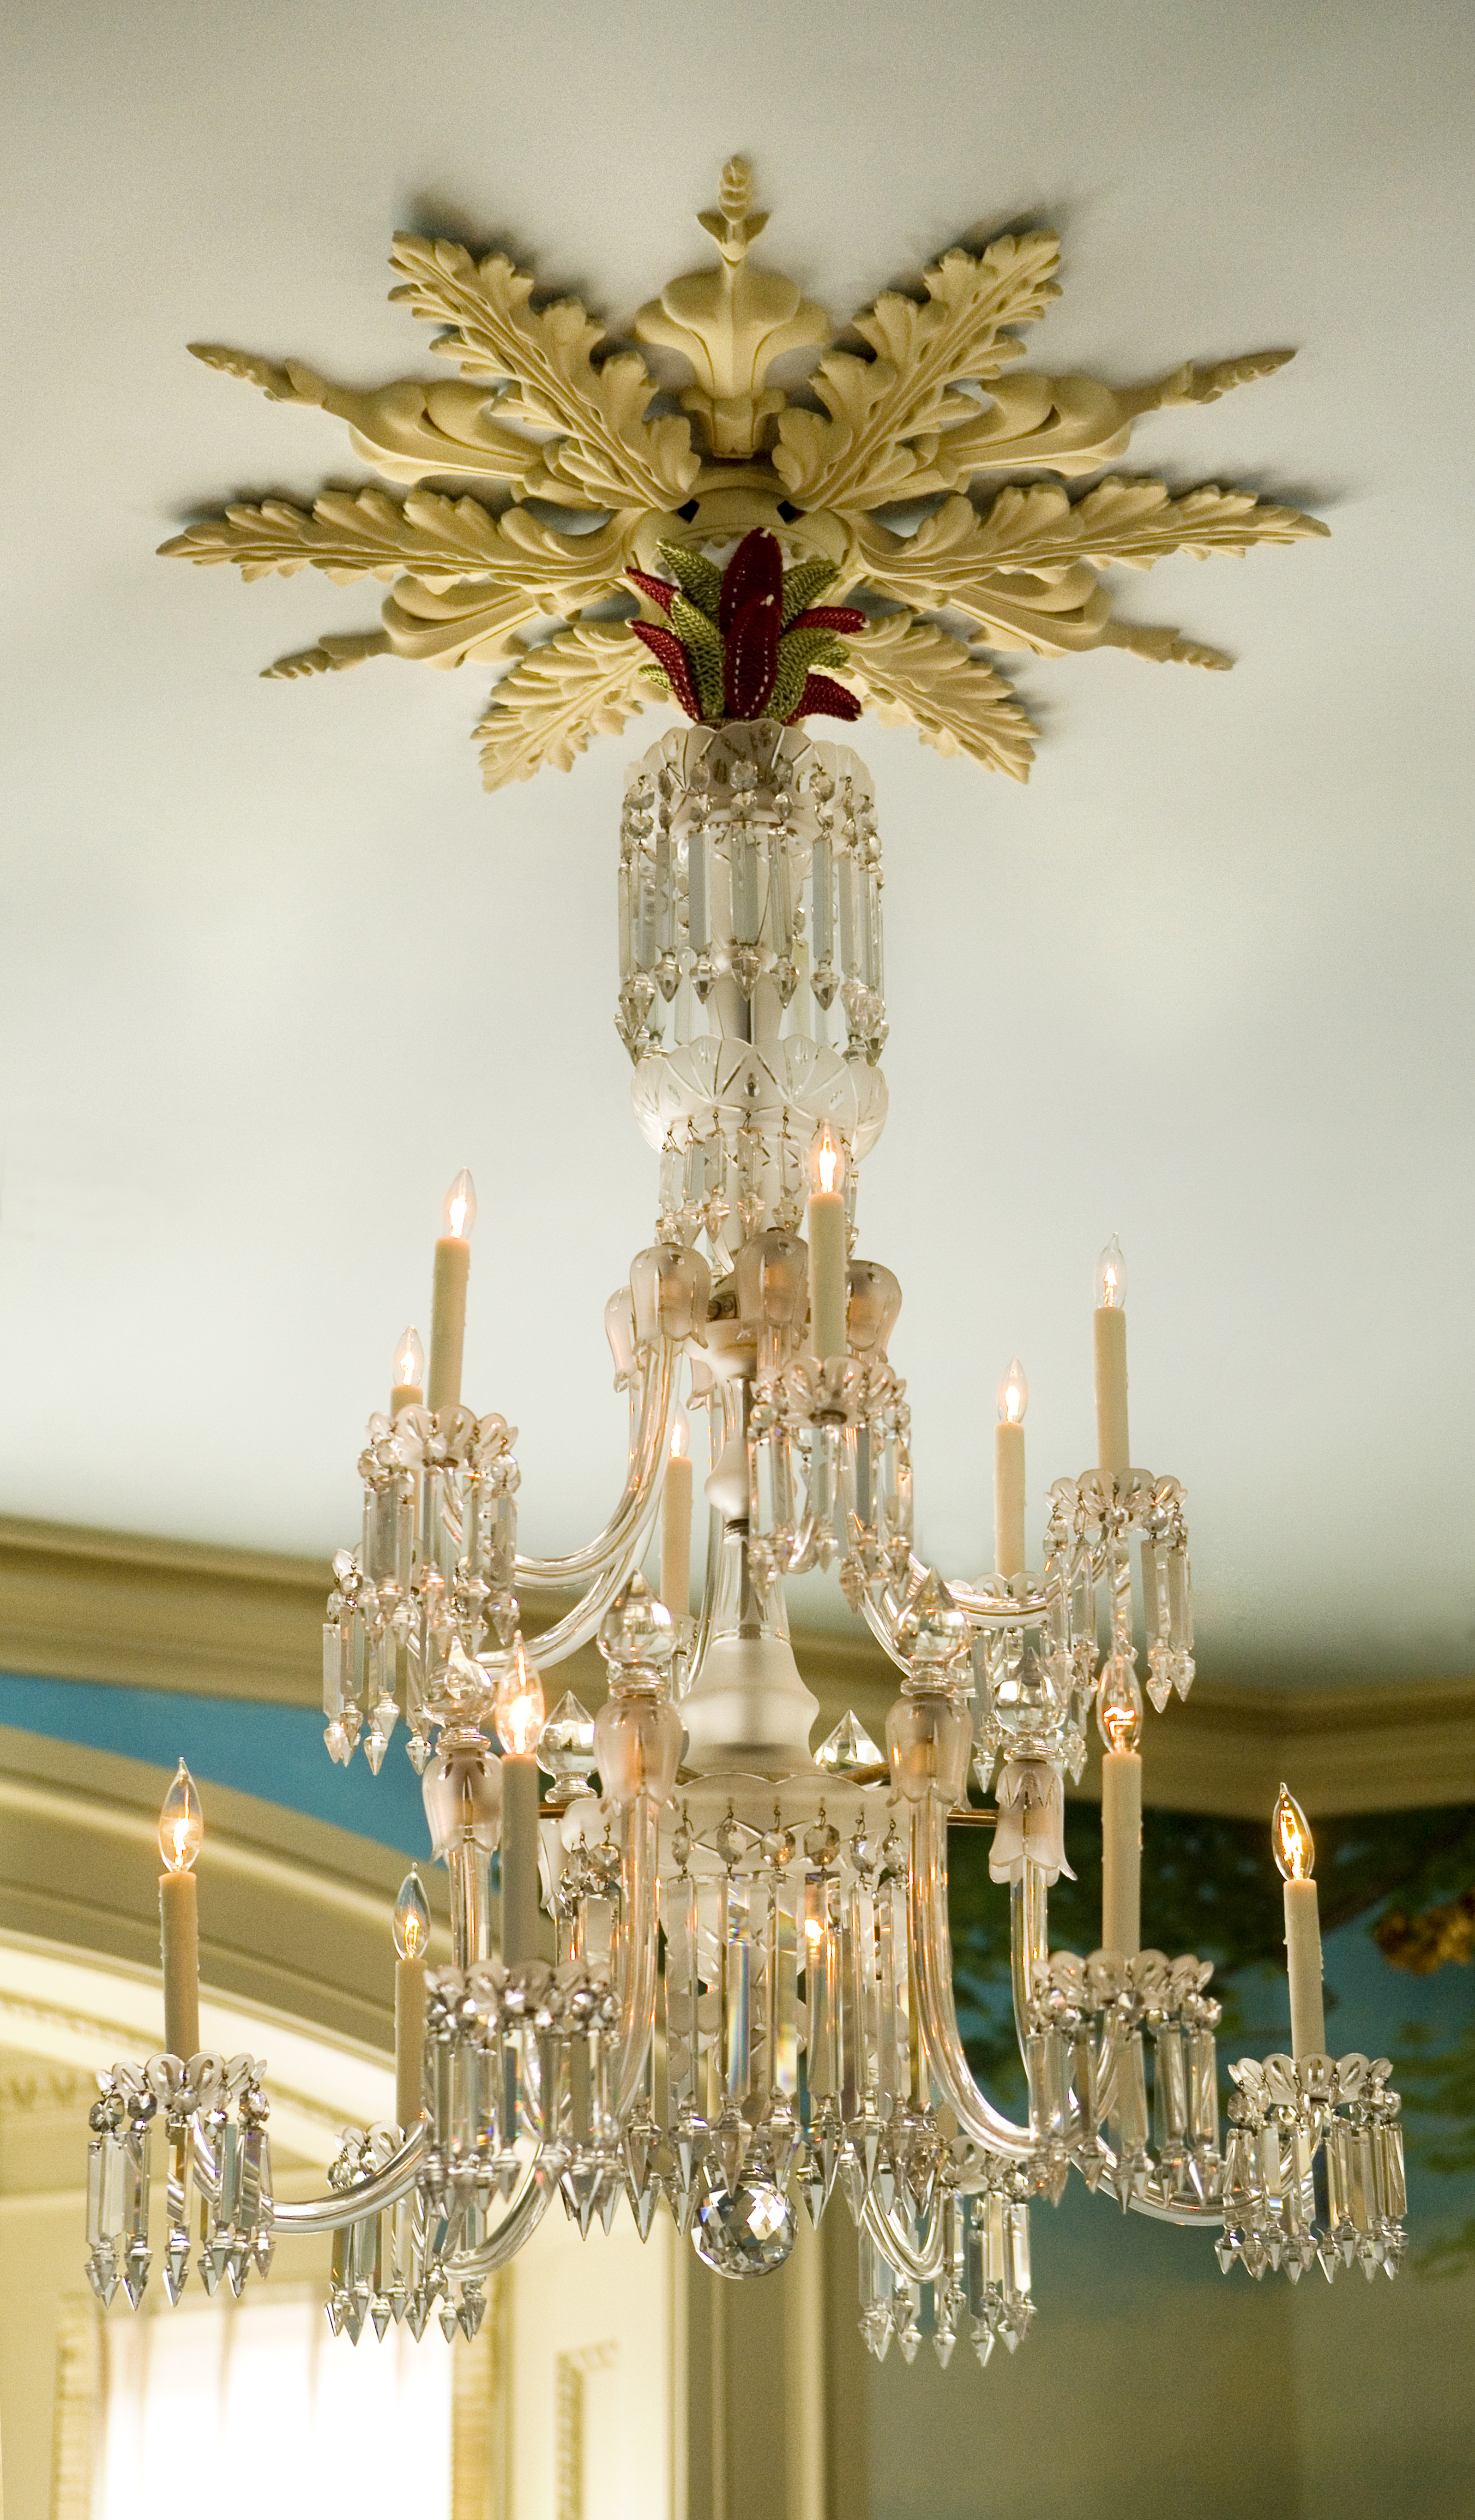 Heidi Pribell detail of chandelier